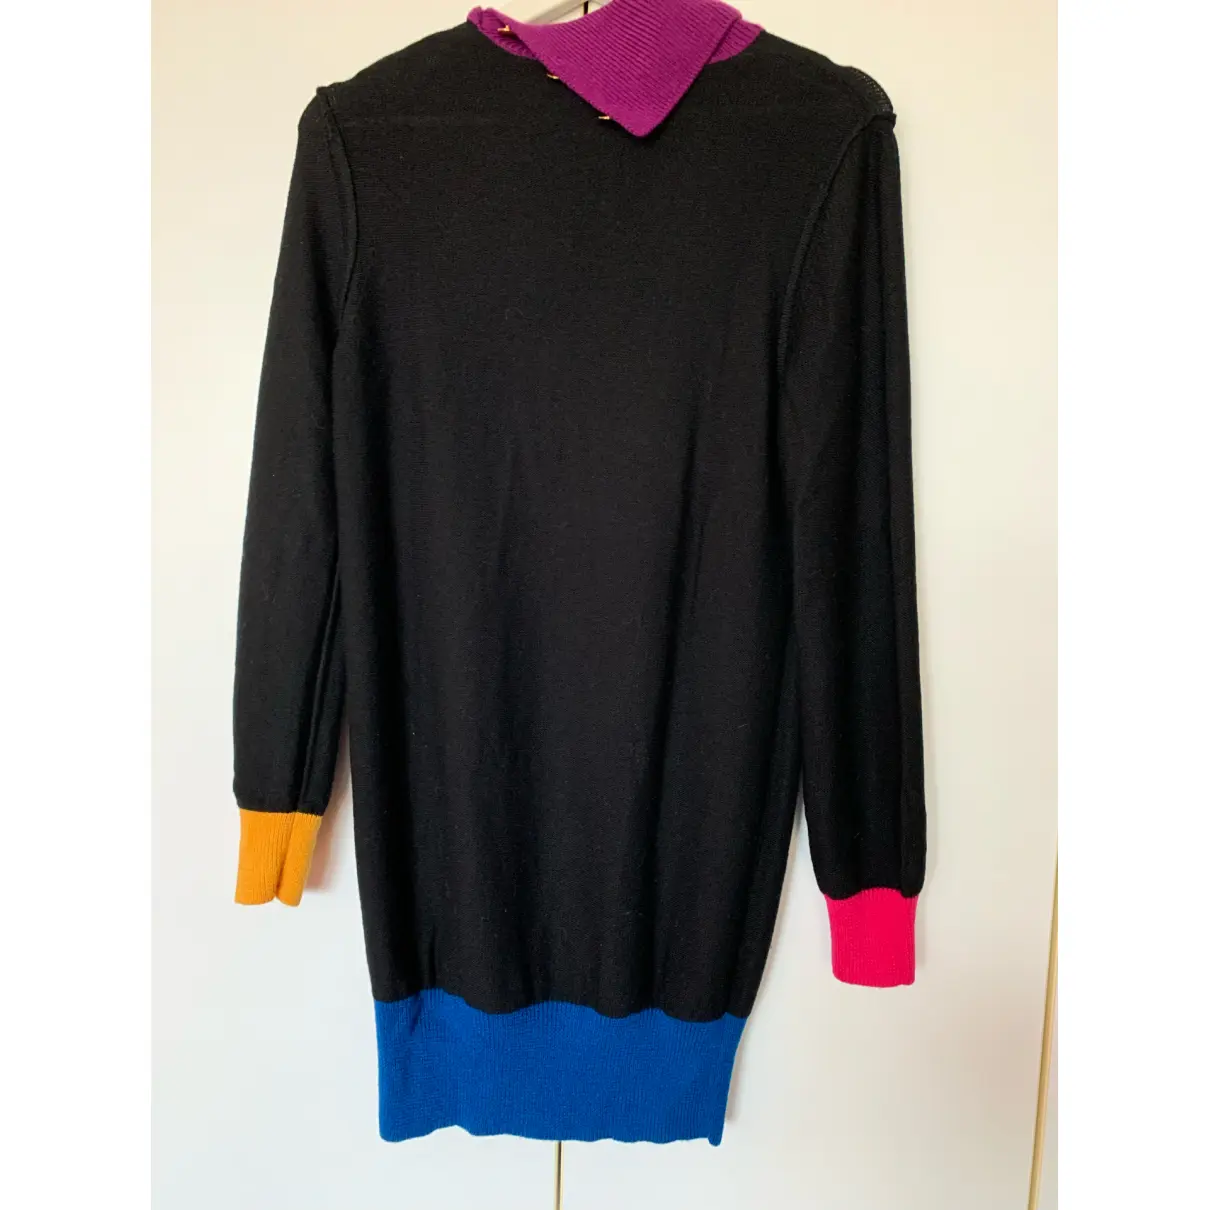 Buy Sonia by Sonia Rykiel Wool sweatshirt online